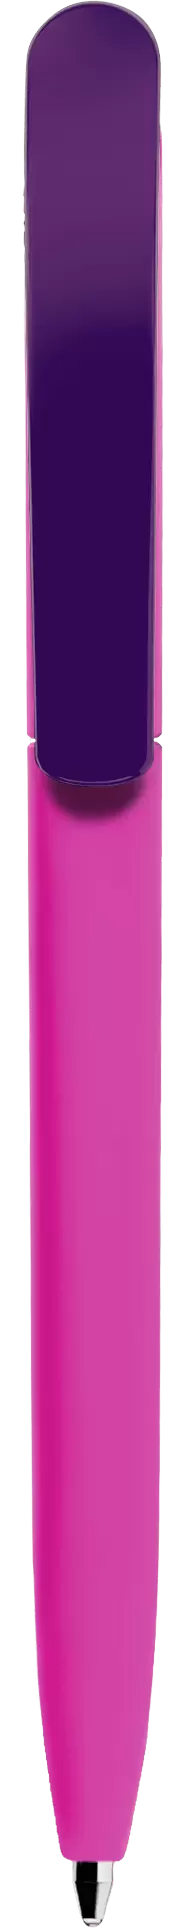 Ручка VIVALDI SOFT MIX Сиреневая с фиолетовым 1333-24-11